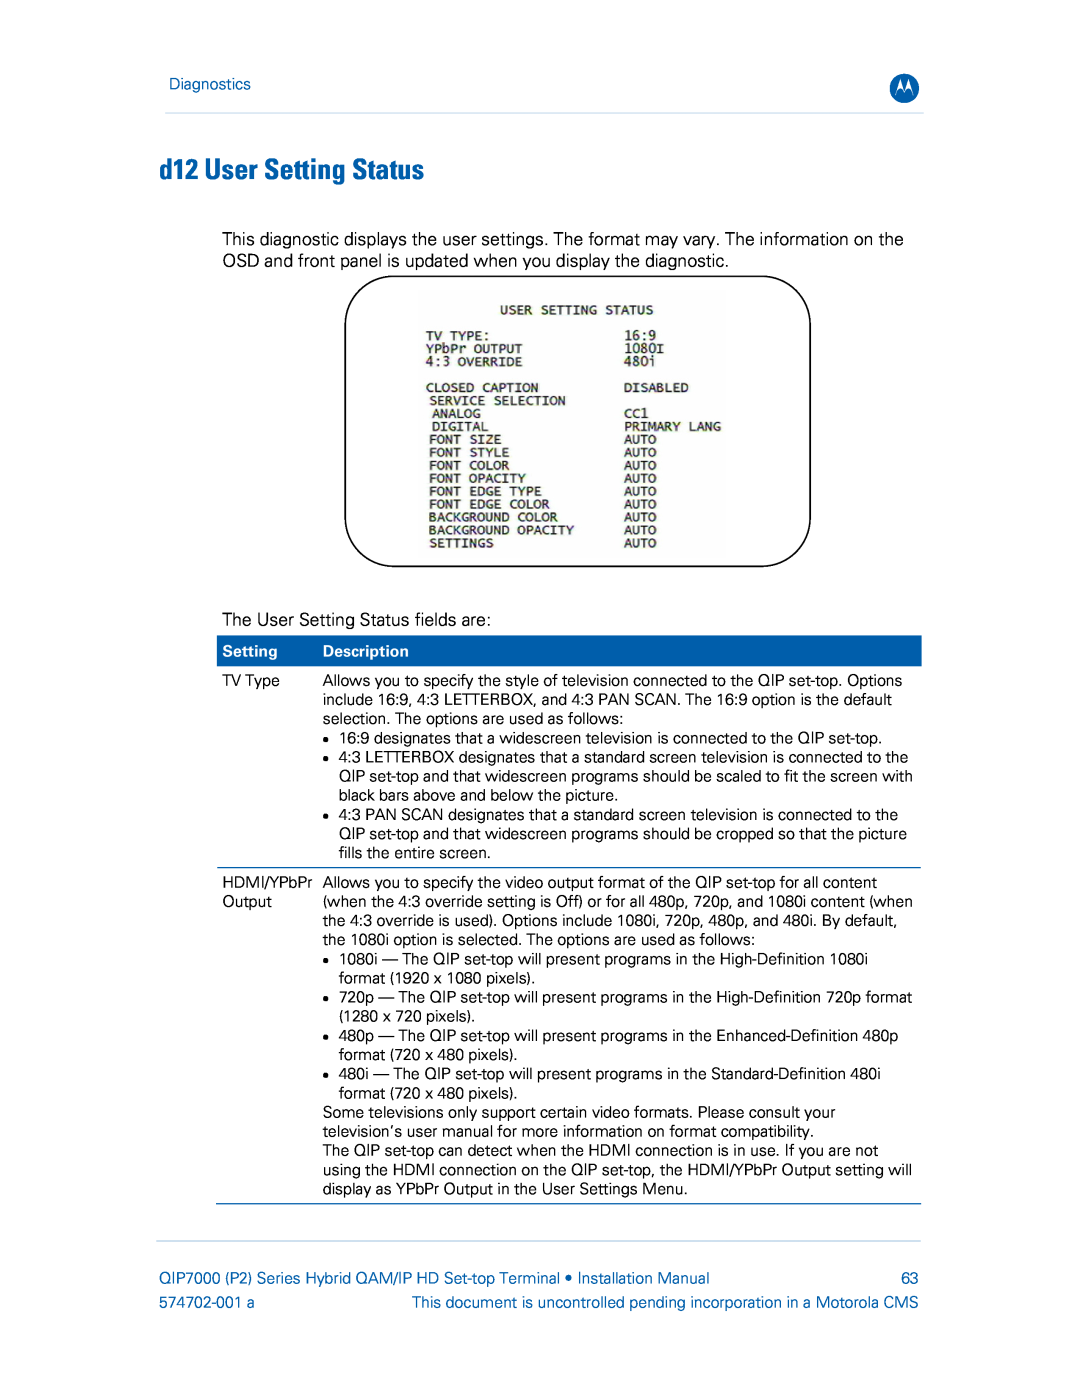 Motorola QIP7000 installation manual d12 User Setting Status, Diagnostics, Description, 574702-001 a 